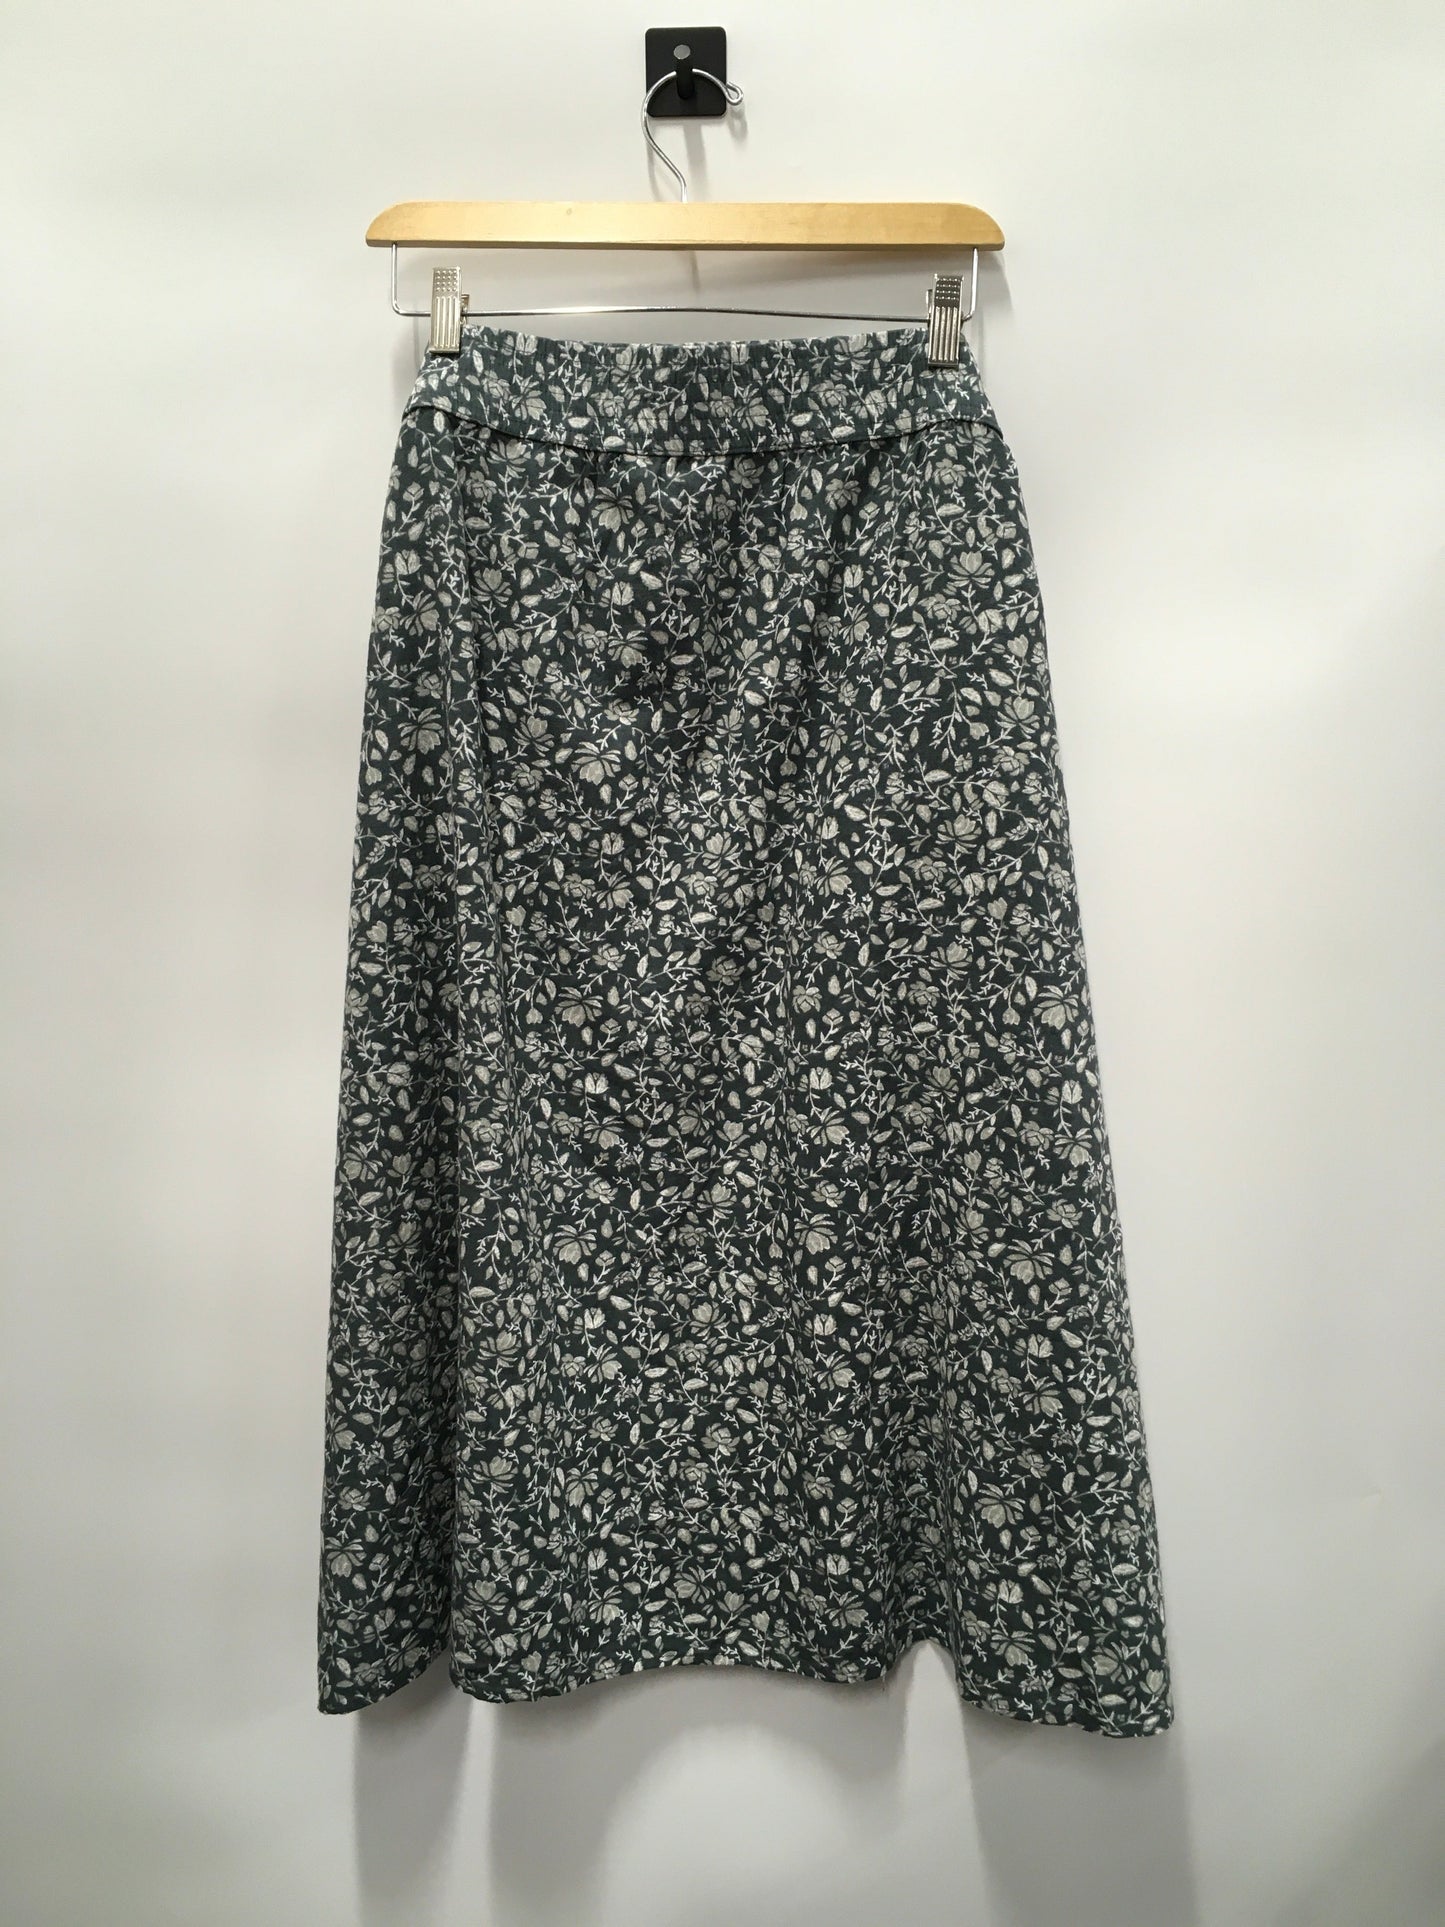 Green Skirt Maxi Sonoma, Size 4x